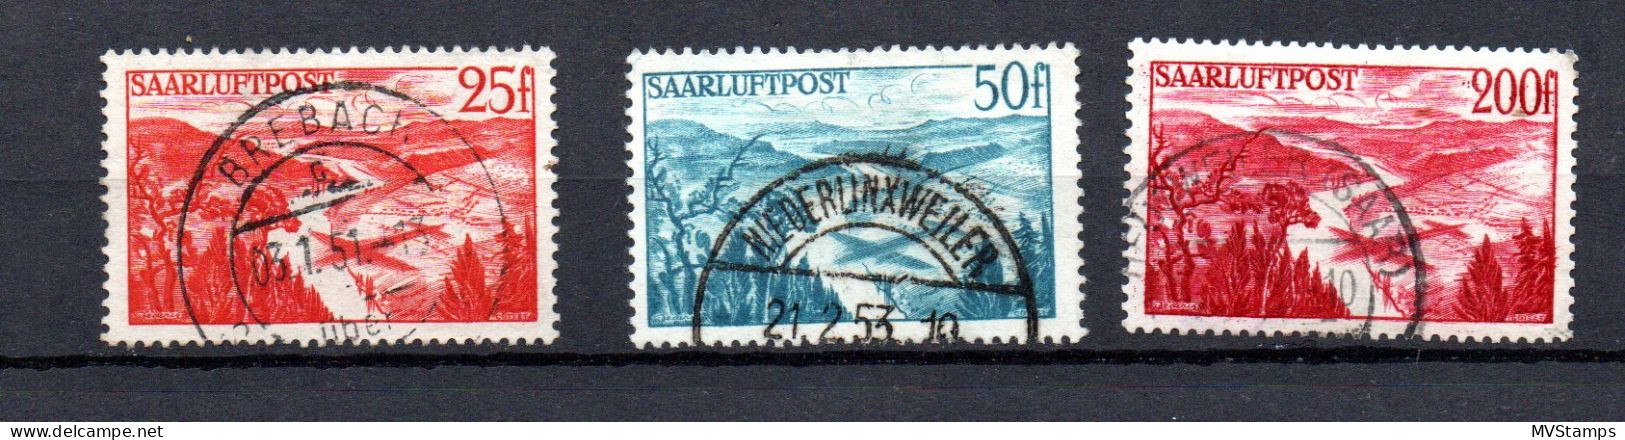 Saar/Germany 1948 Old Set Airmail Stamps (Michel 252/54) Nice Used - Poste Aérienne